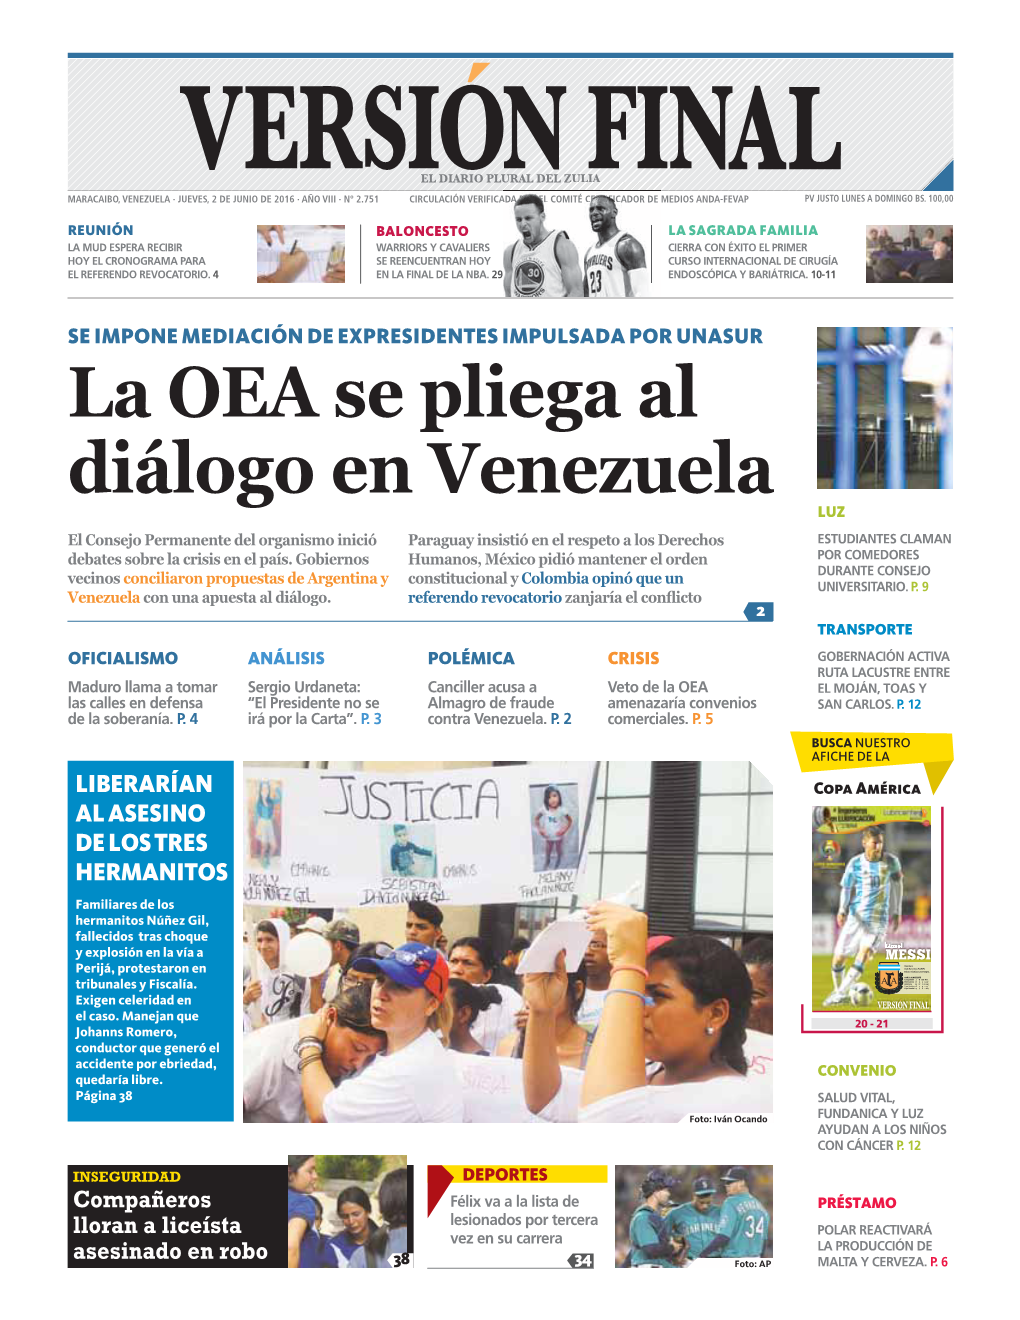 La OEA Se Pliega Al Diálogo En Venezuela